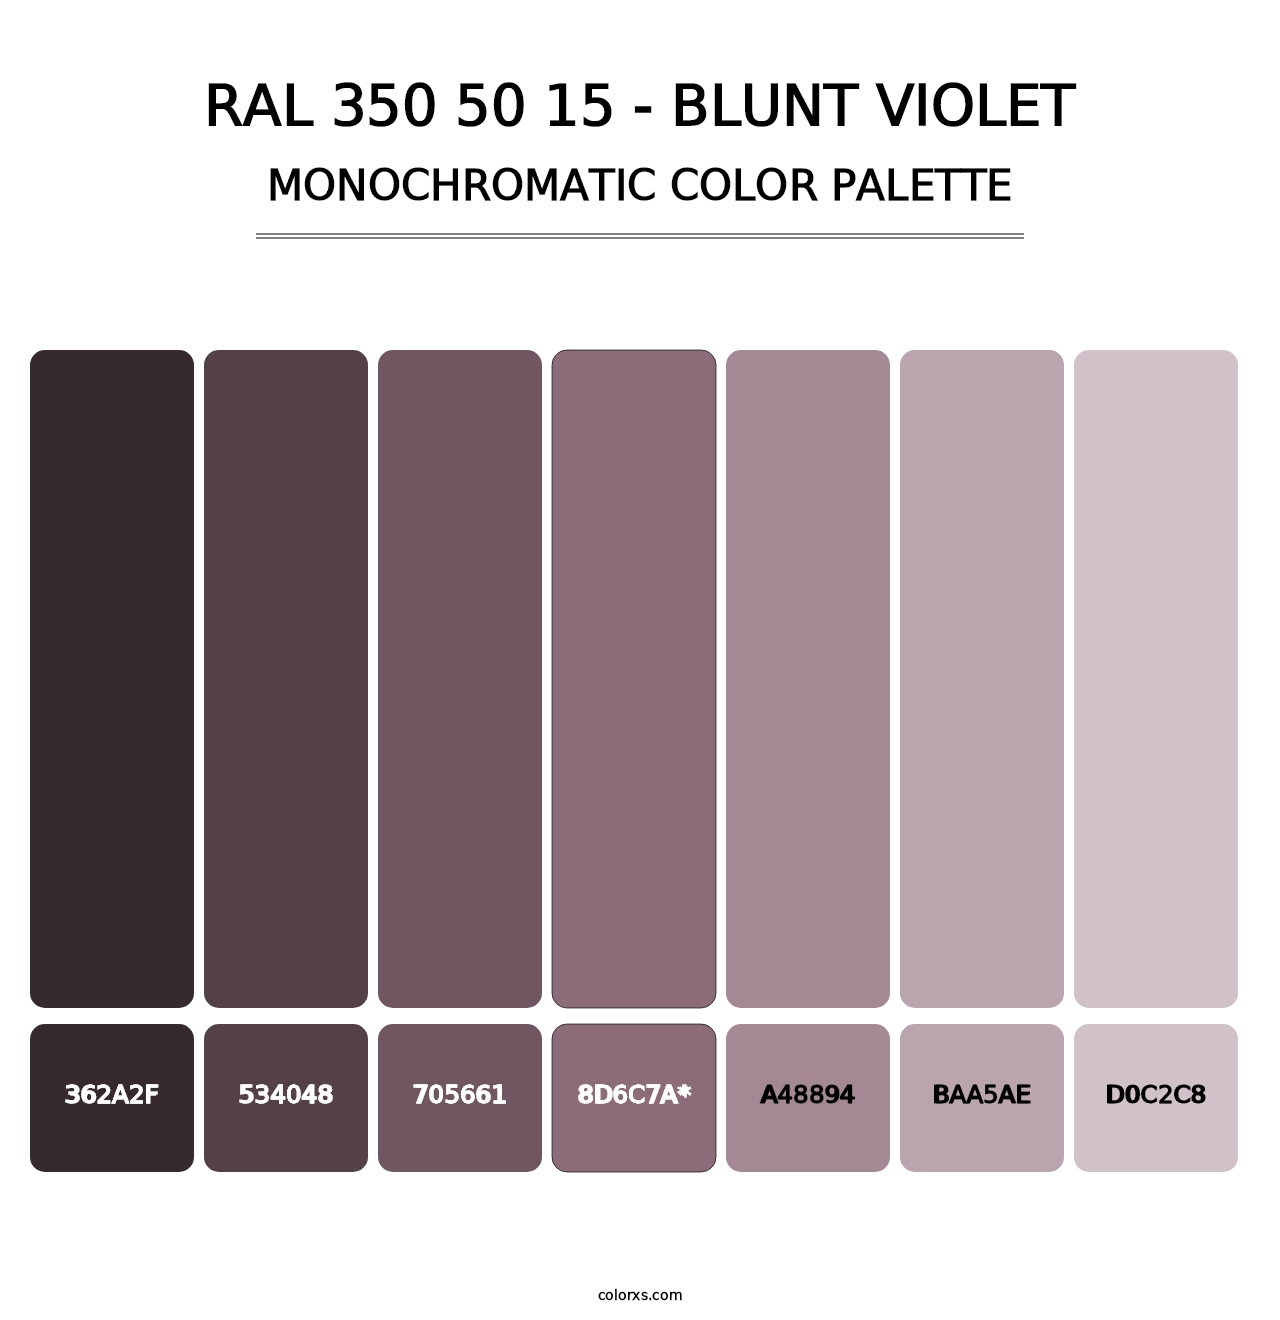 RAL 350 50 15 - Blunt Violet - Monochromatic Color Palette